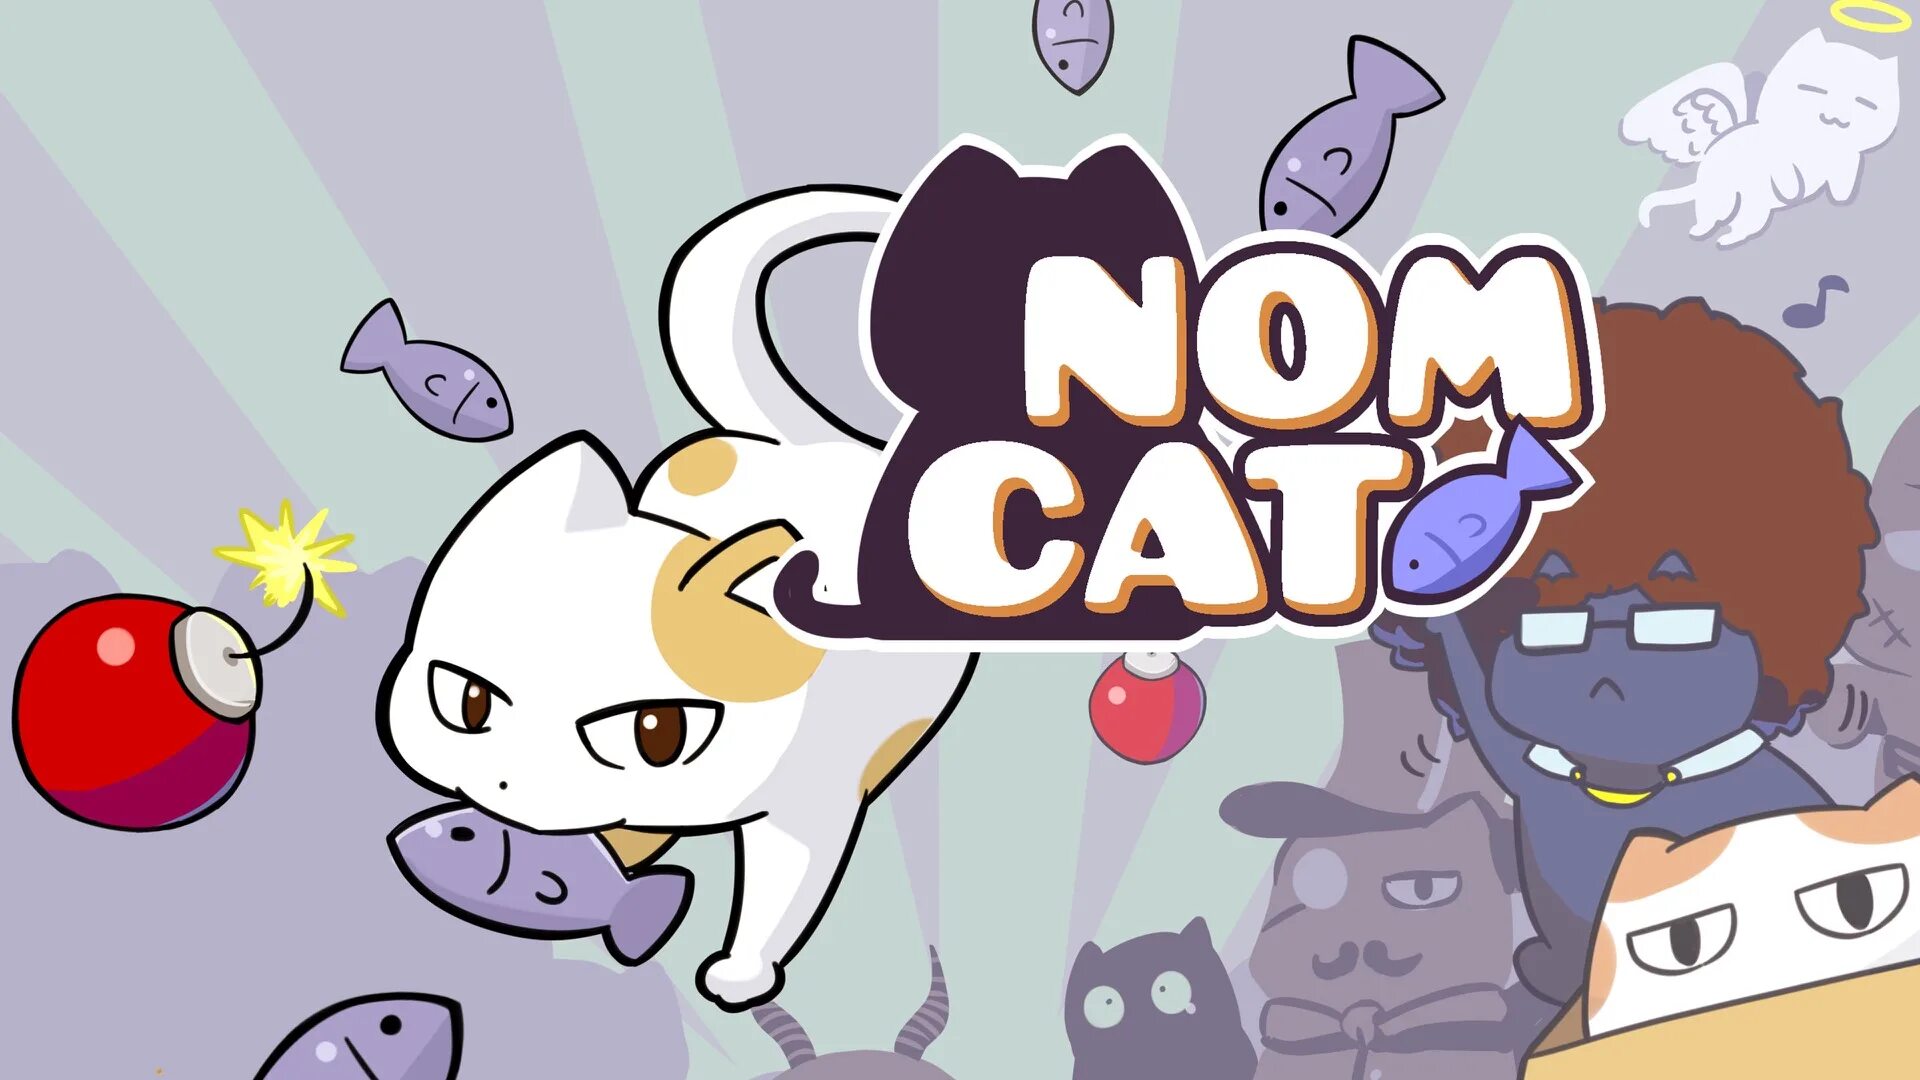 Cat games на андроид